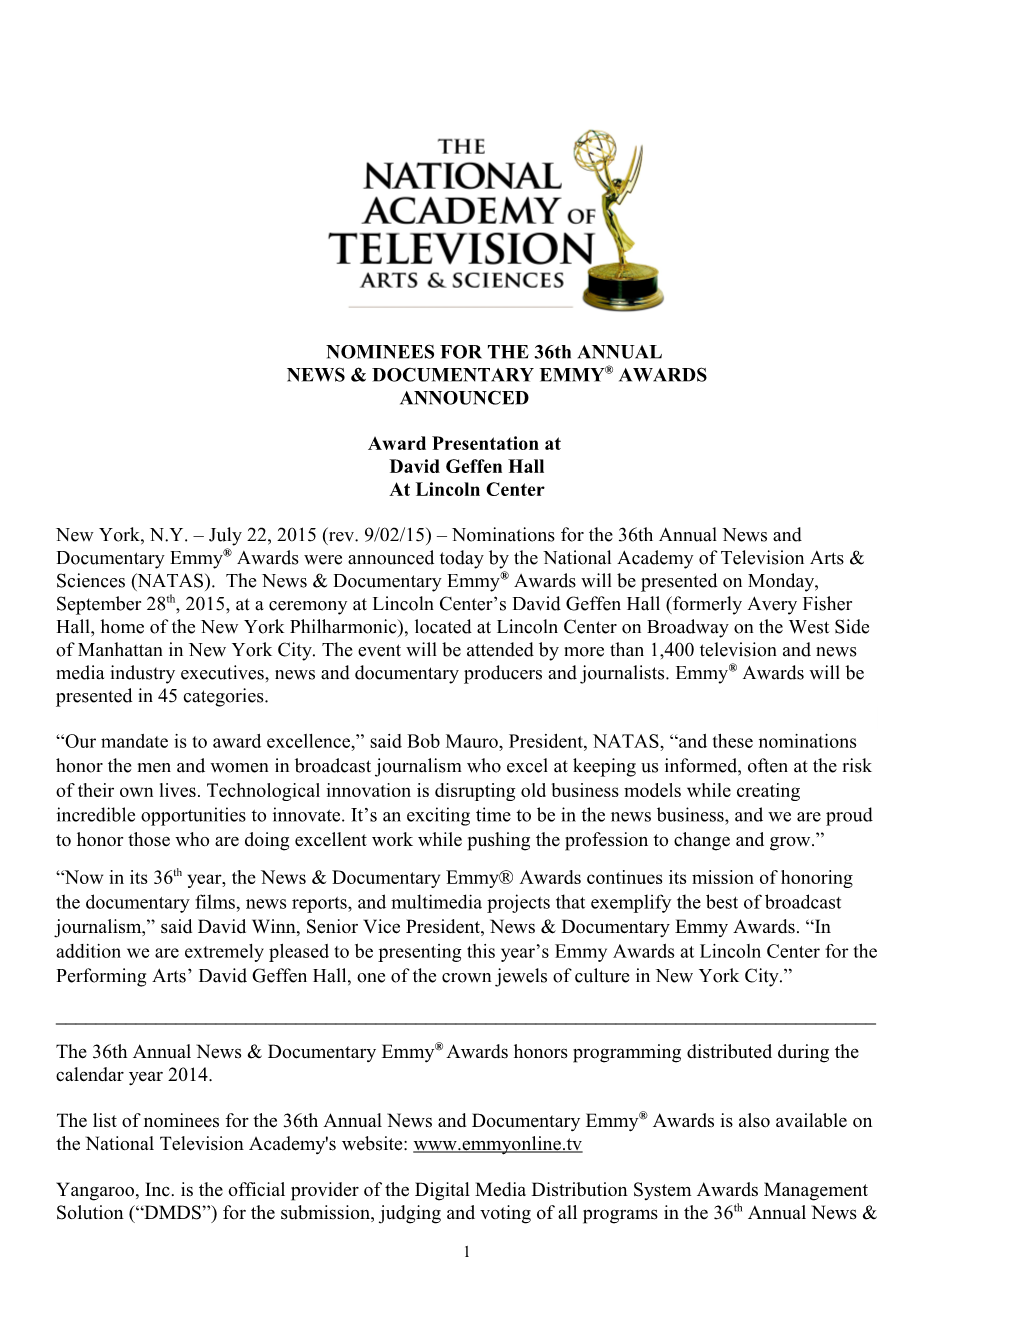 News & Documentary Emmy Awards s1